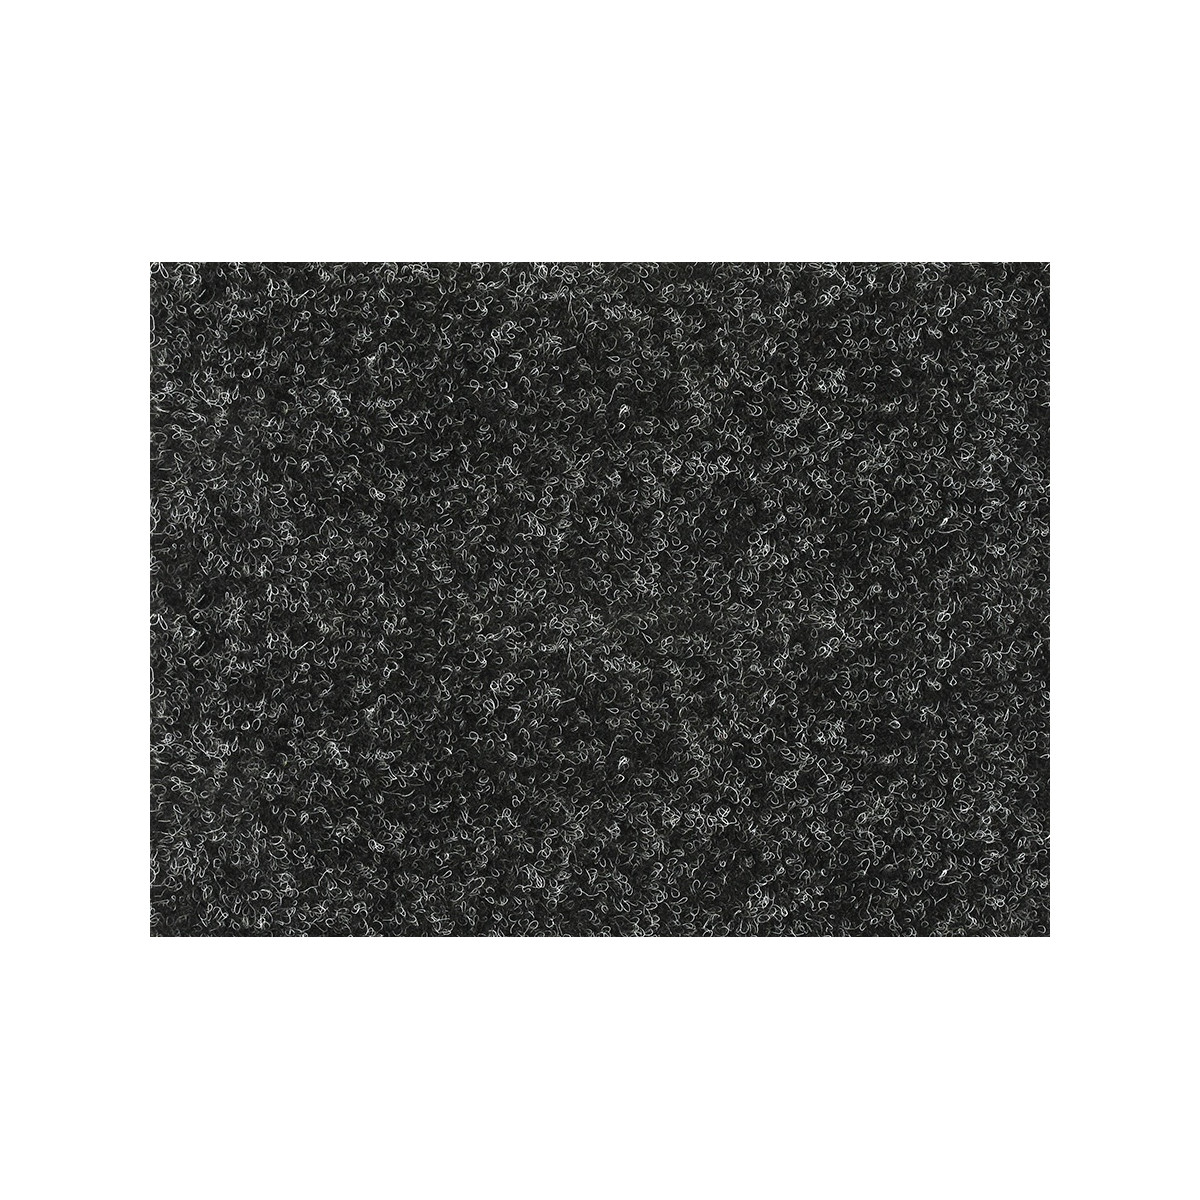 AKCE: 130x440 cm Metrážový koberec Santana 50 černá s podkladem resine, zátěžový